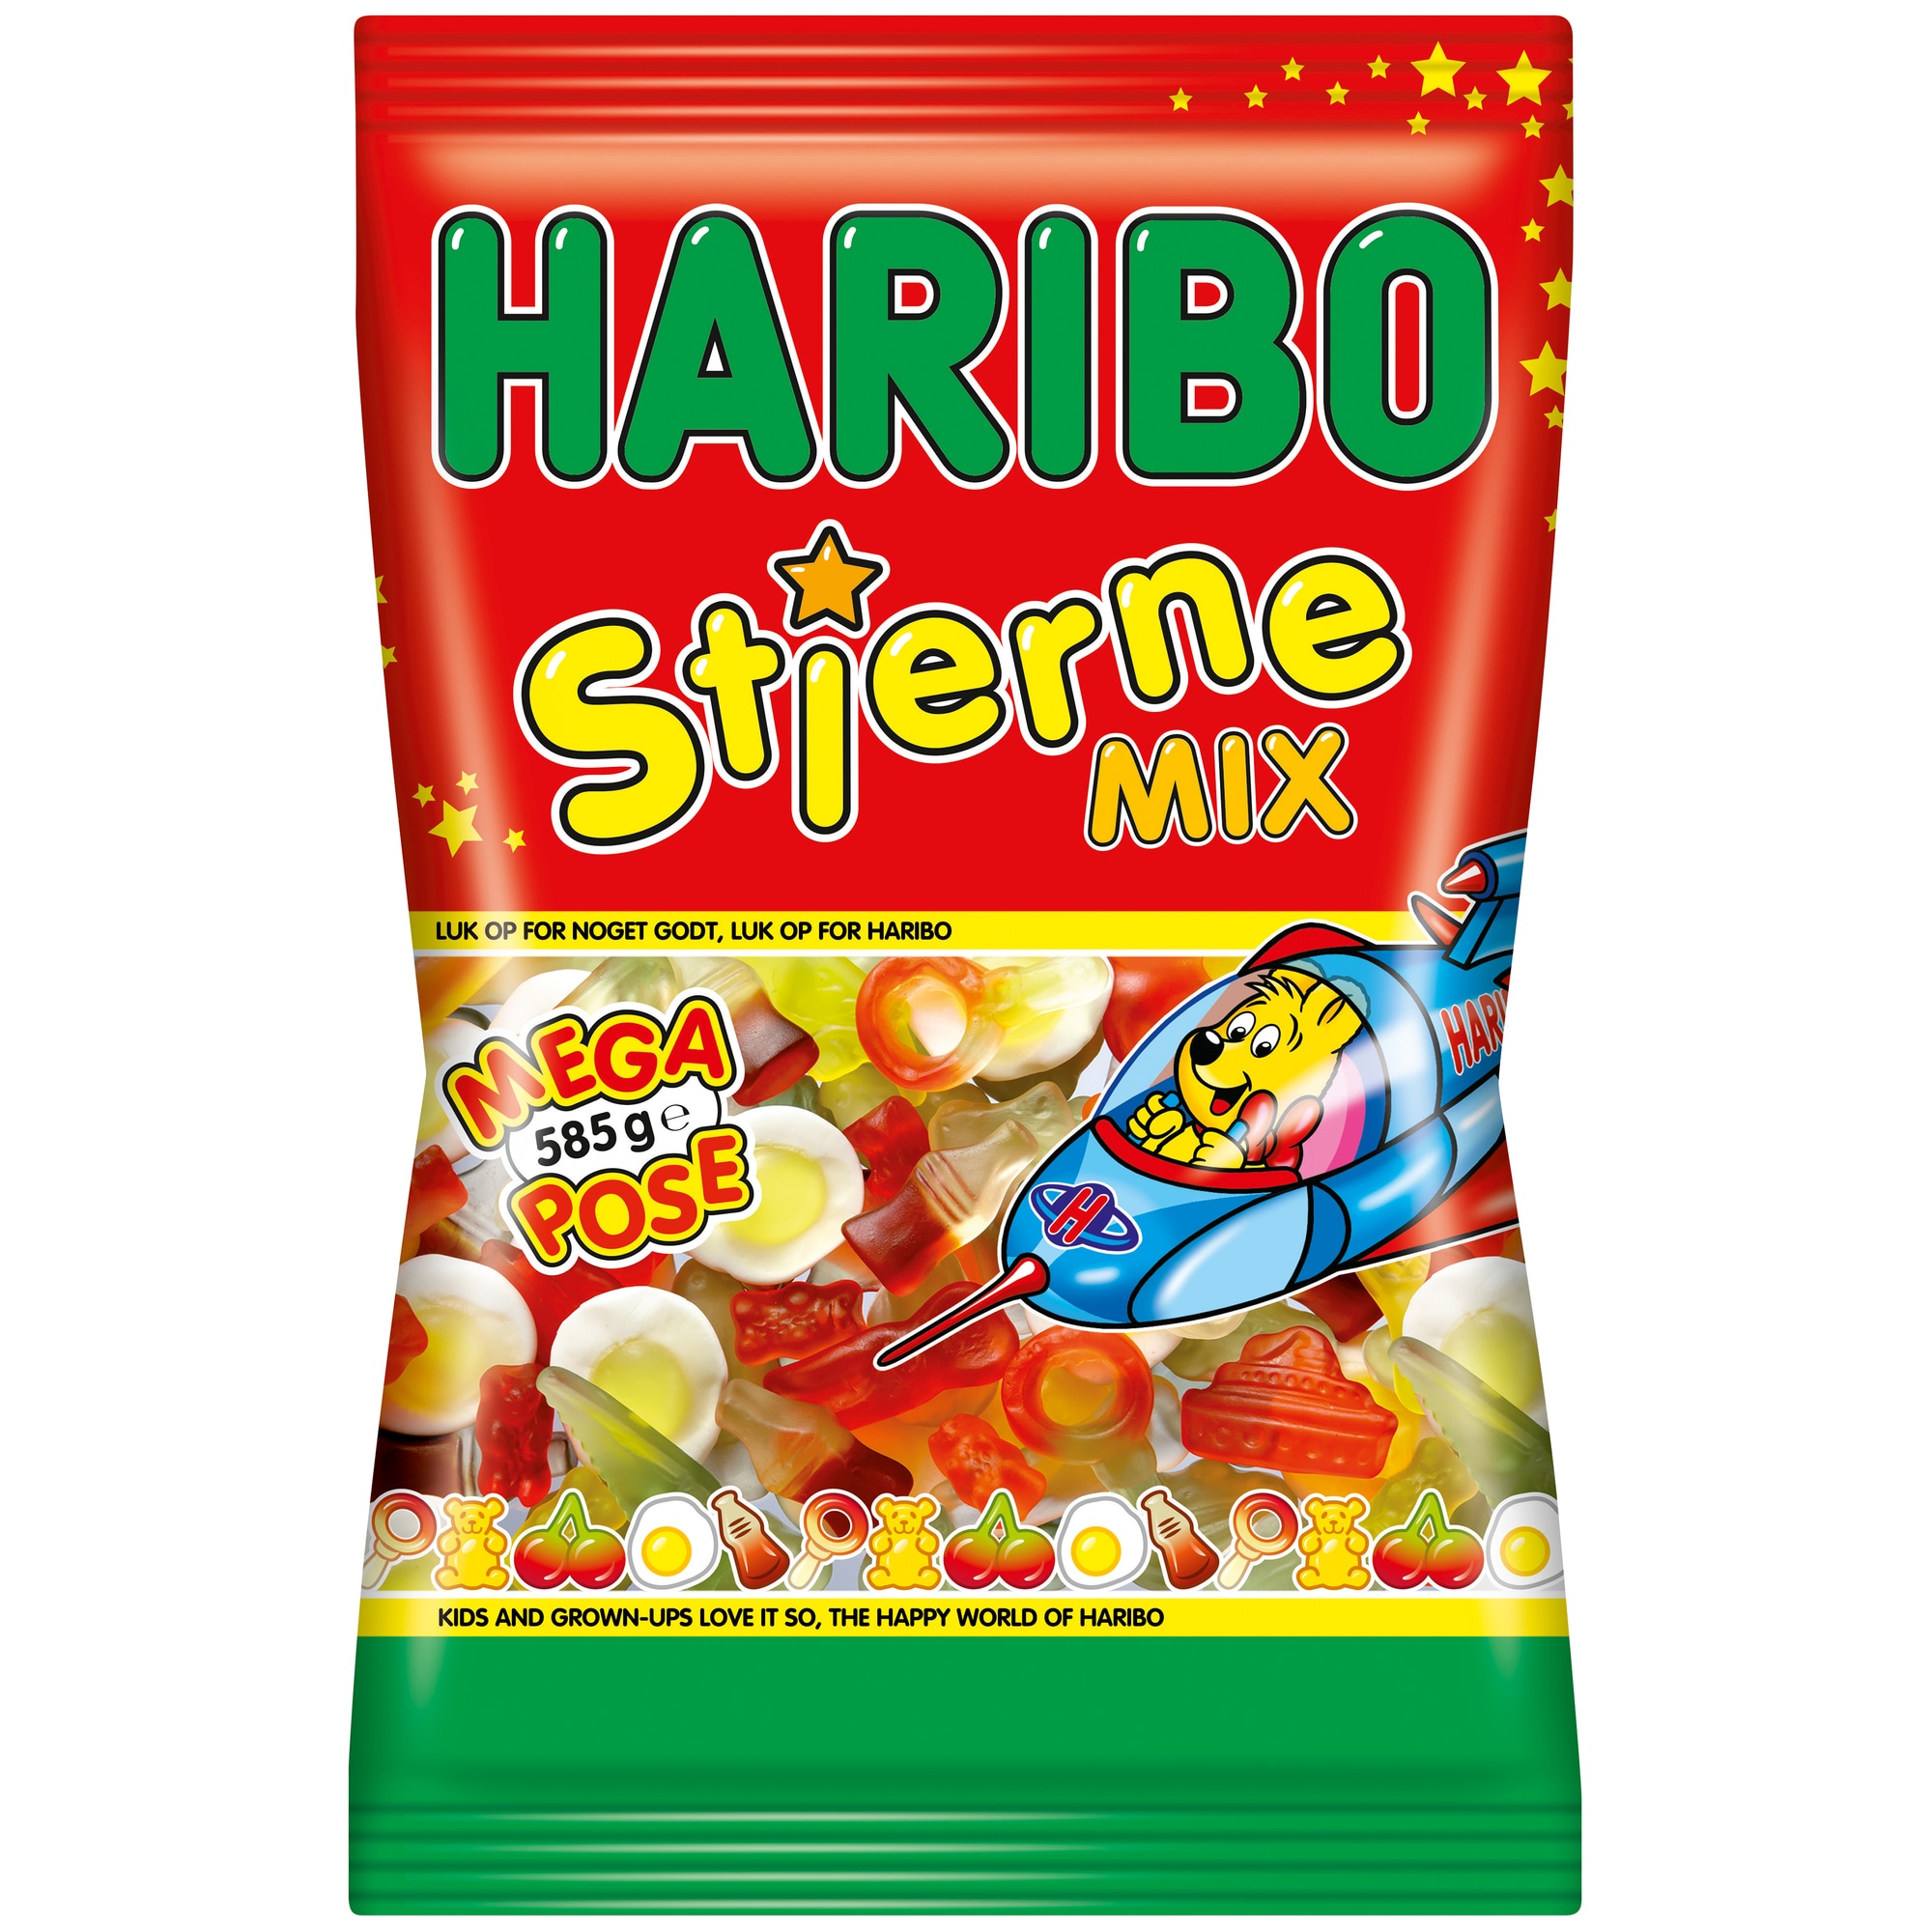 Haribo Stjerne Mix godis 01913 - Övrigt Hem och Hushåll - Elgiganten